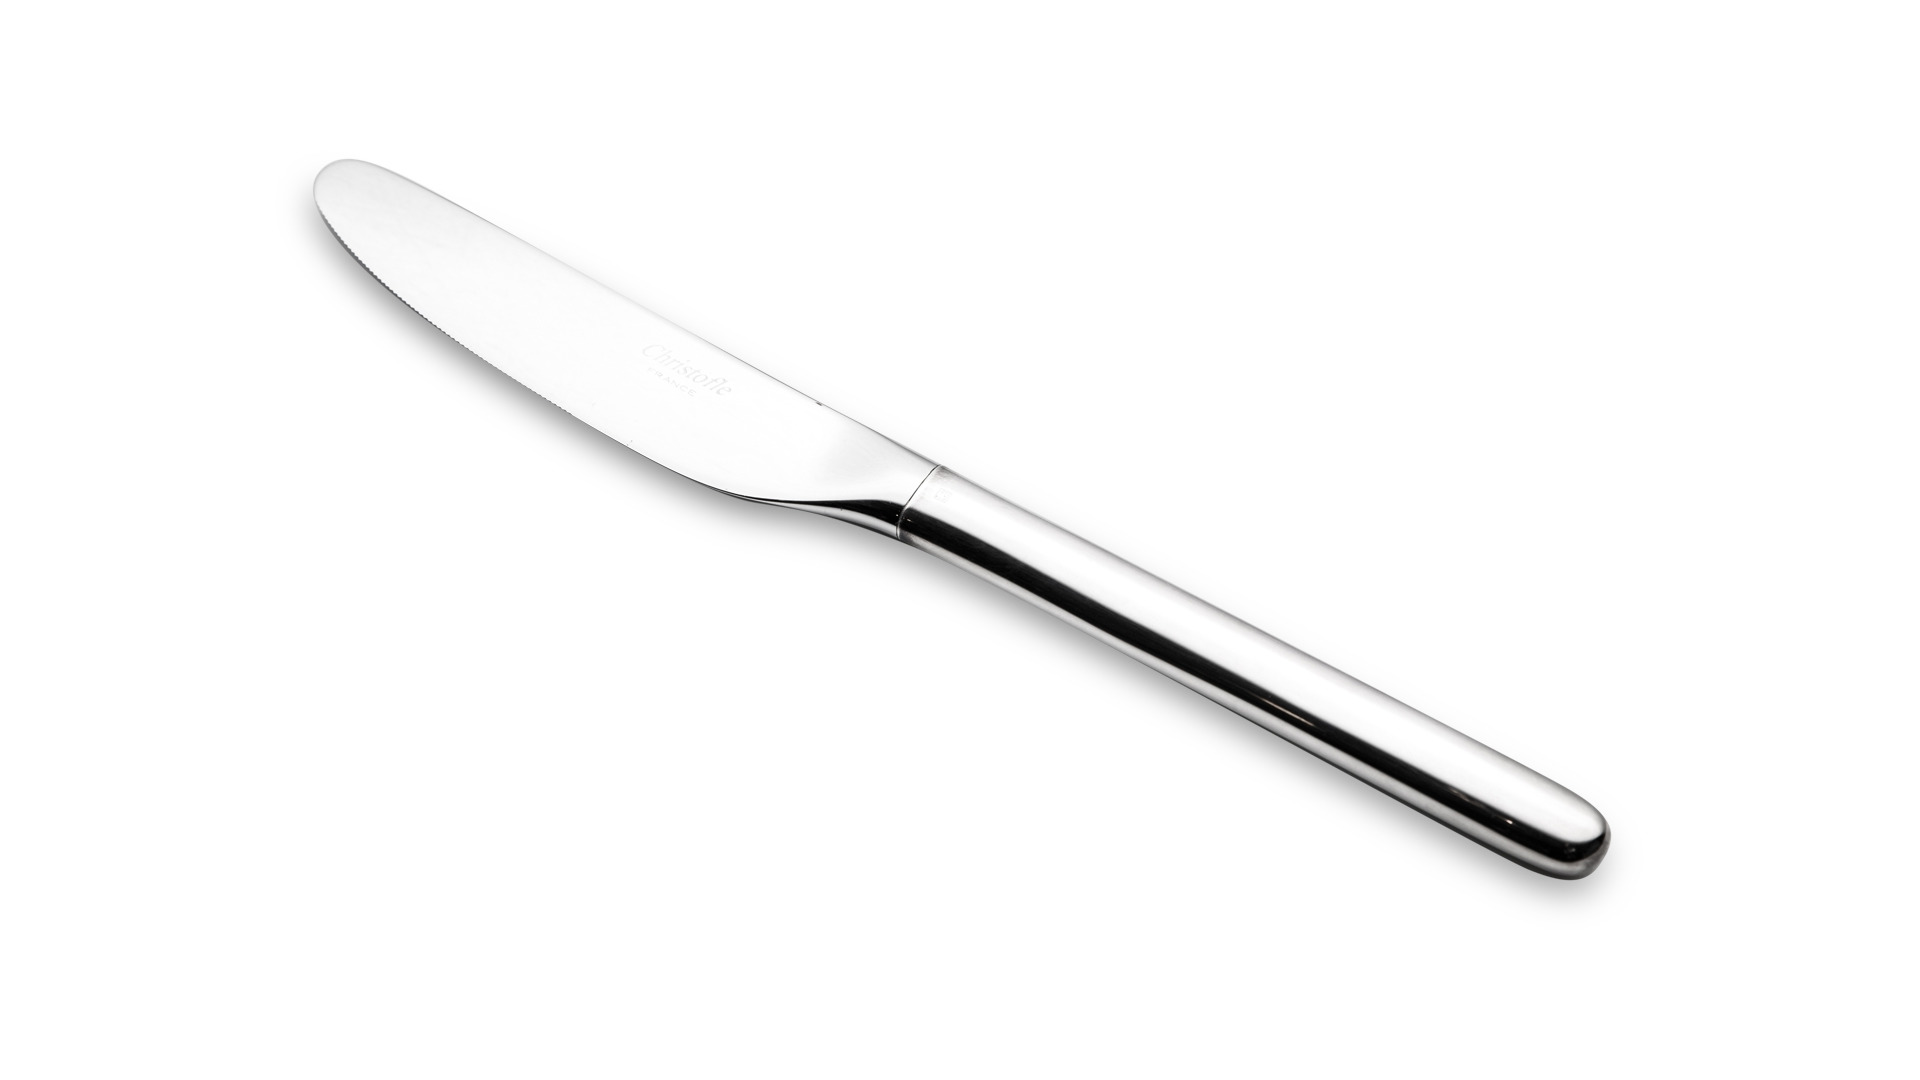 Нож столовый Christofle Тенере 25 см, посеребрение